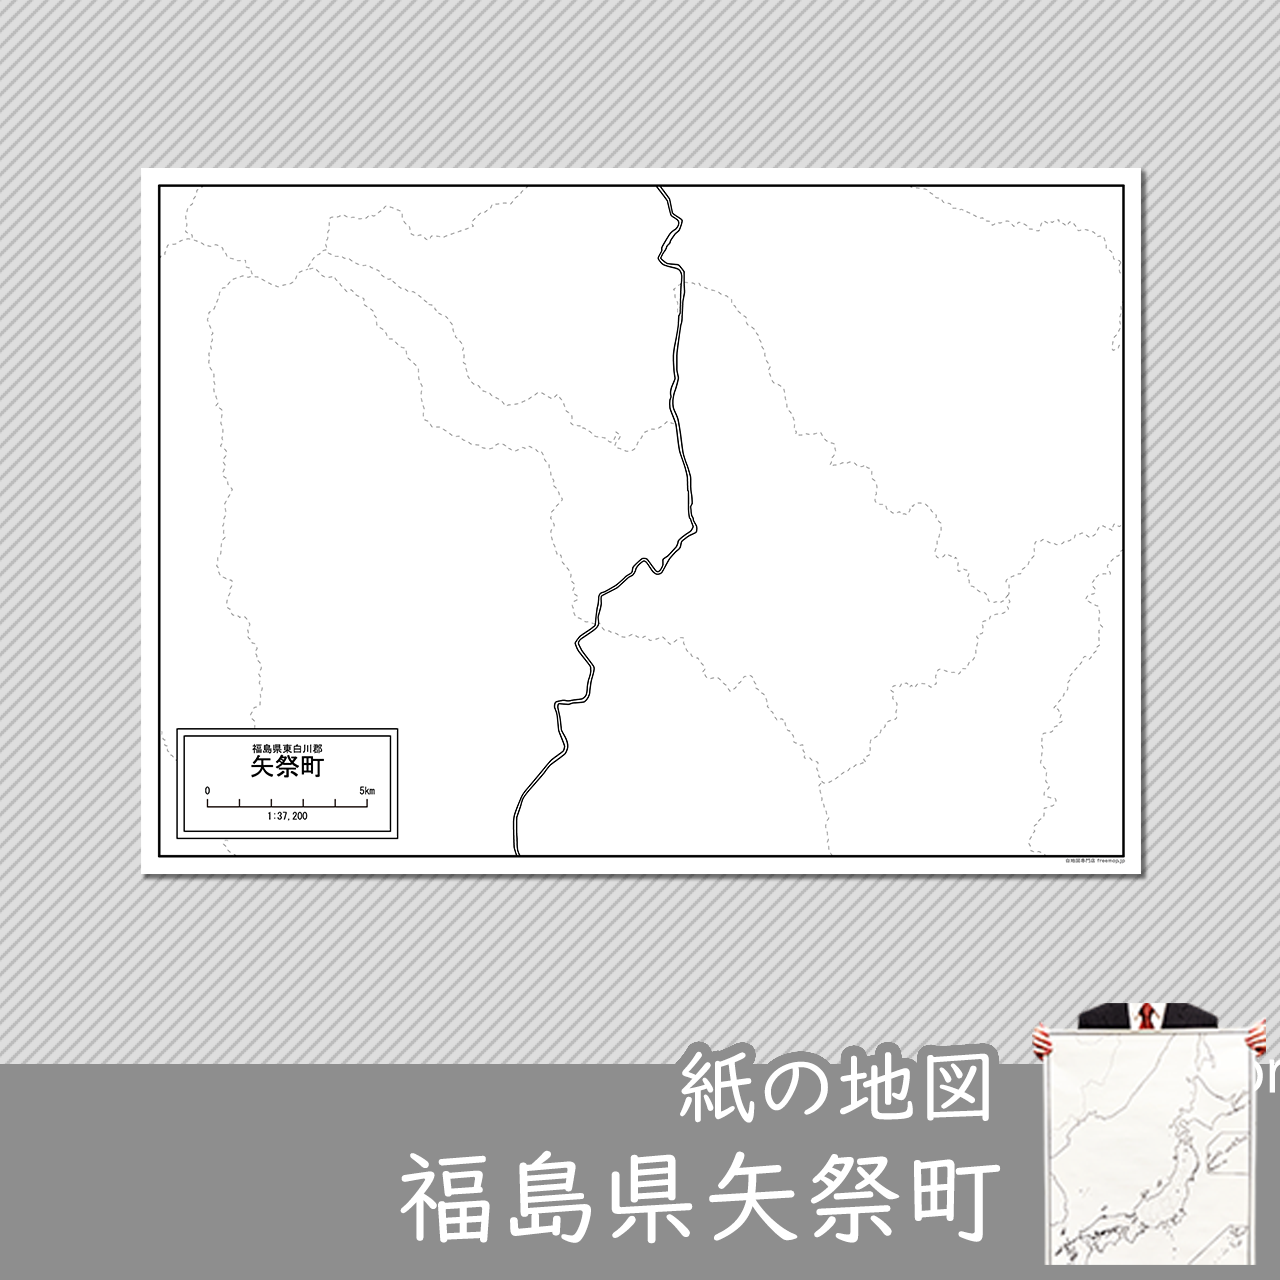 矢祭町の紙の白地図のサムネイル